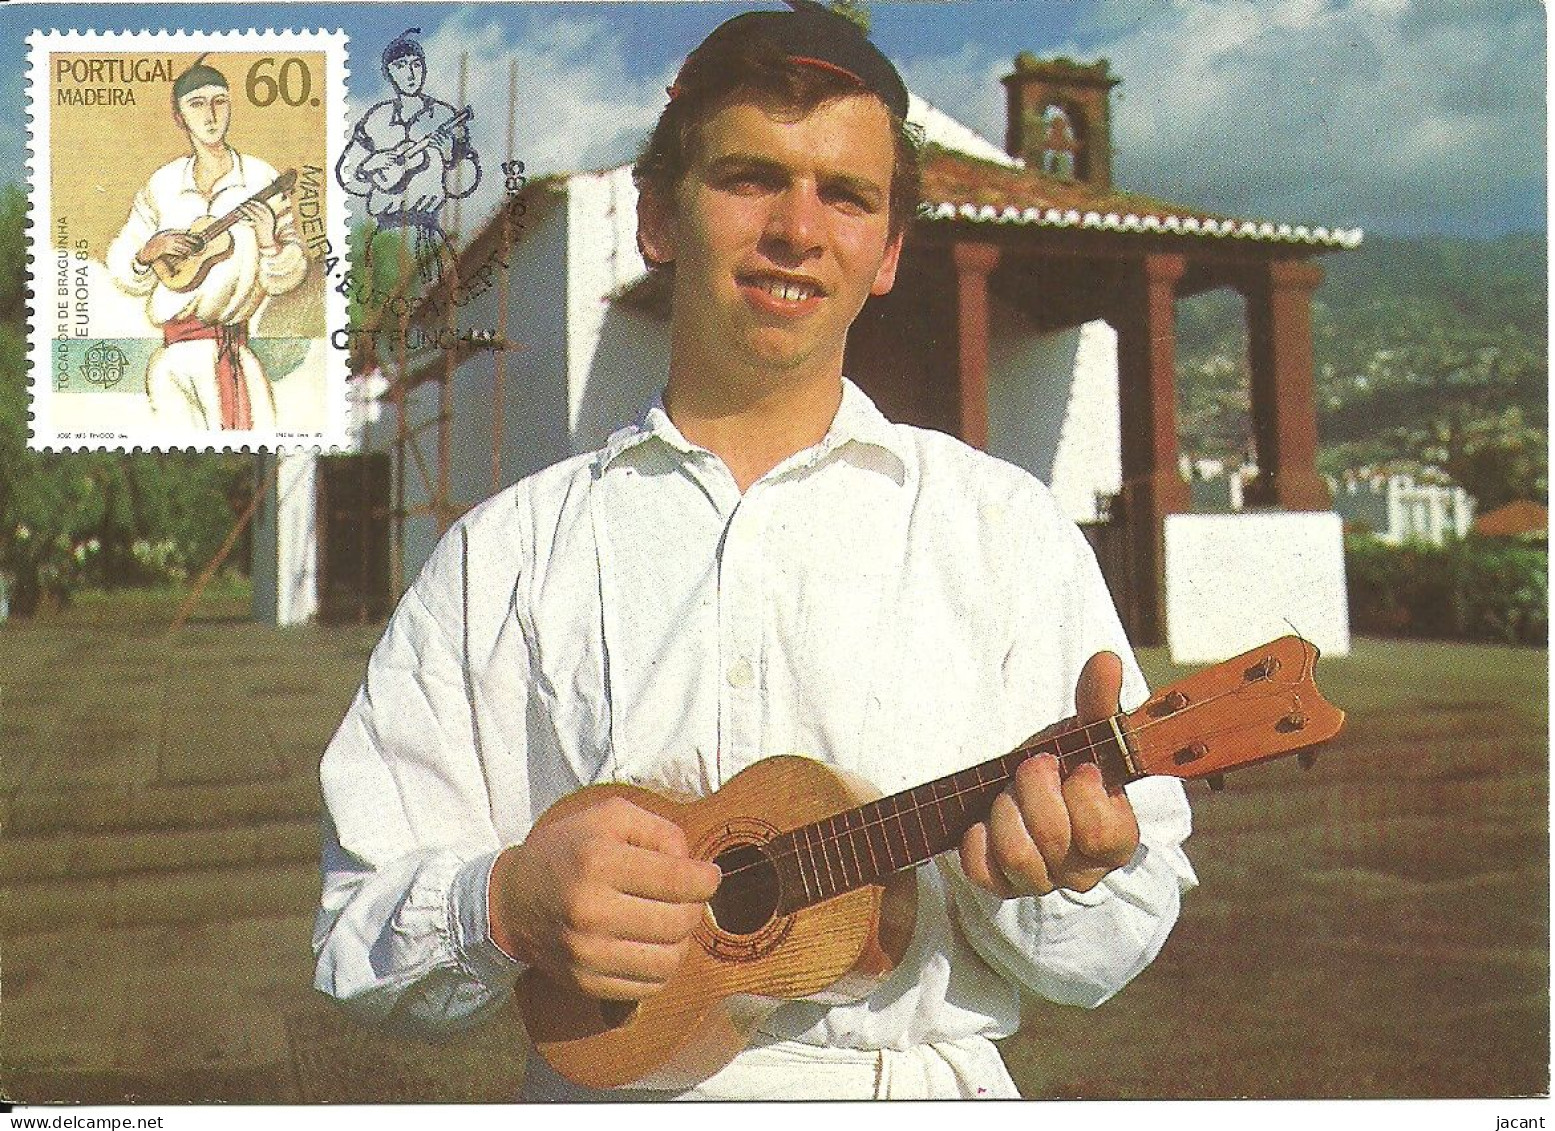 30842 - Carte Maximum - Portugal - Madeira Europa Tocadora De Braguinha - Instrument Musique Guitare Folk Musical Guitar - Cartes-maximum (CM)